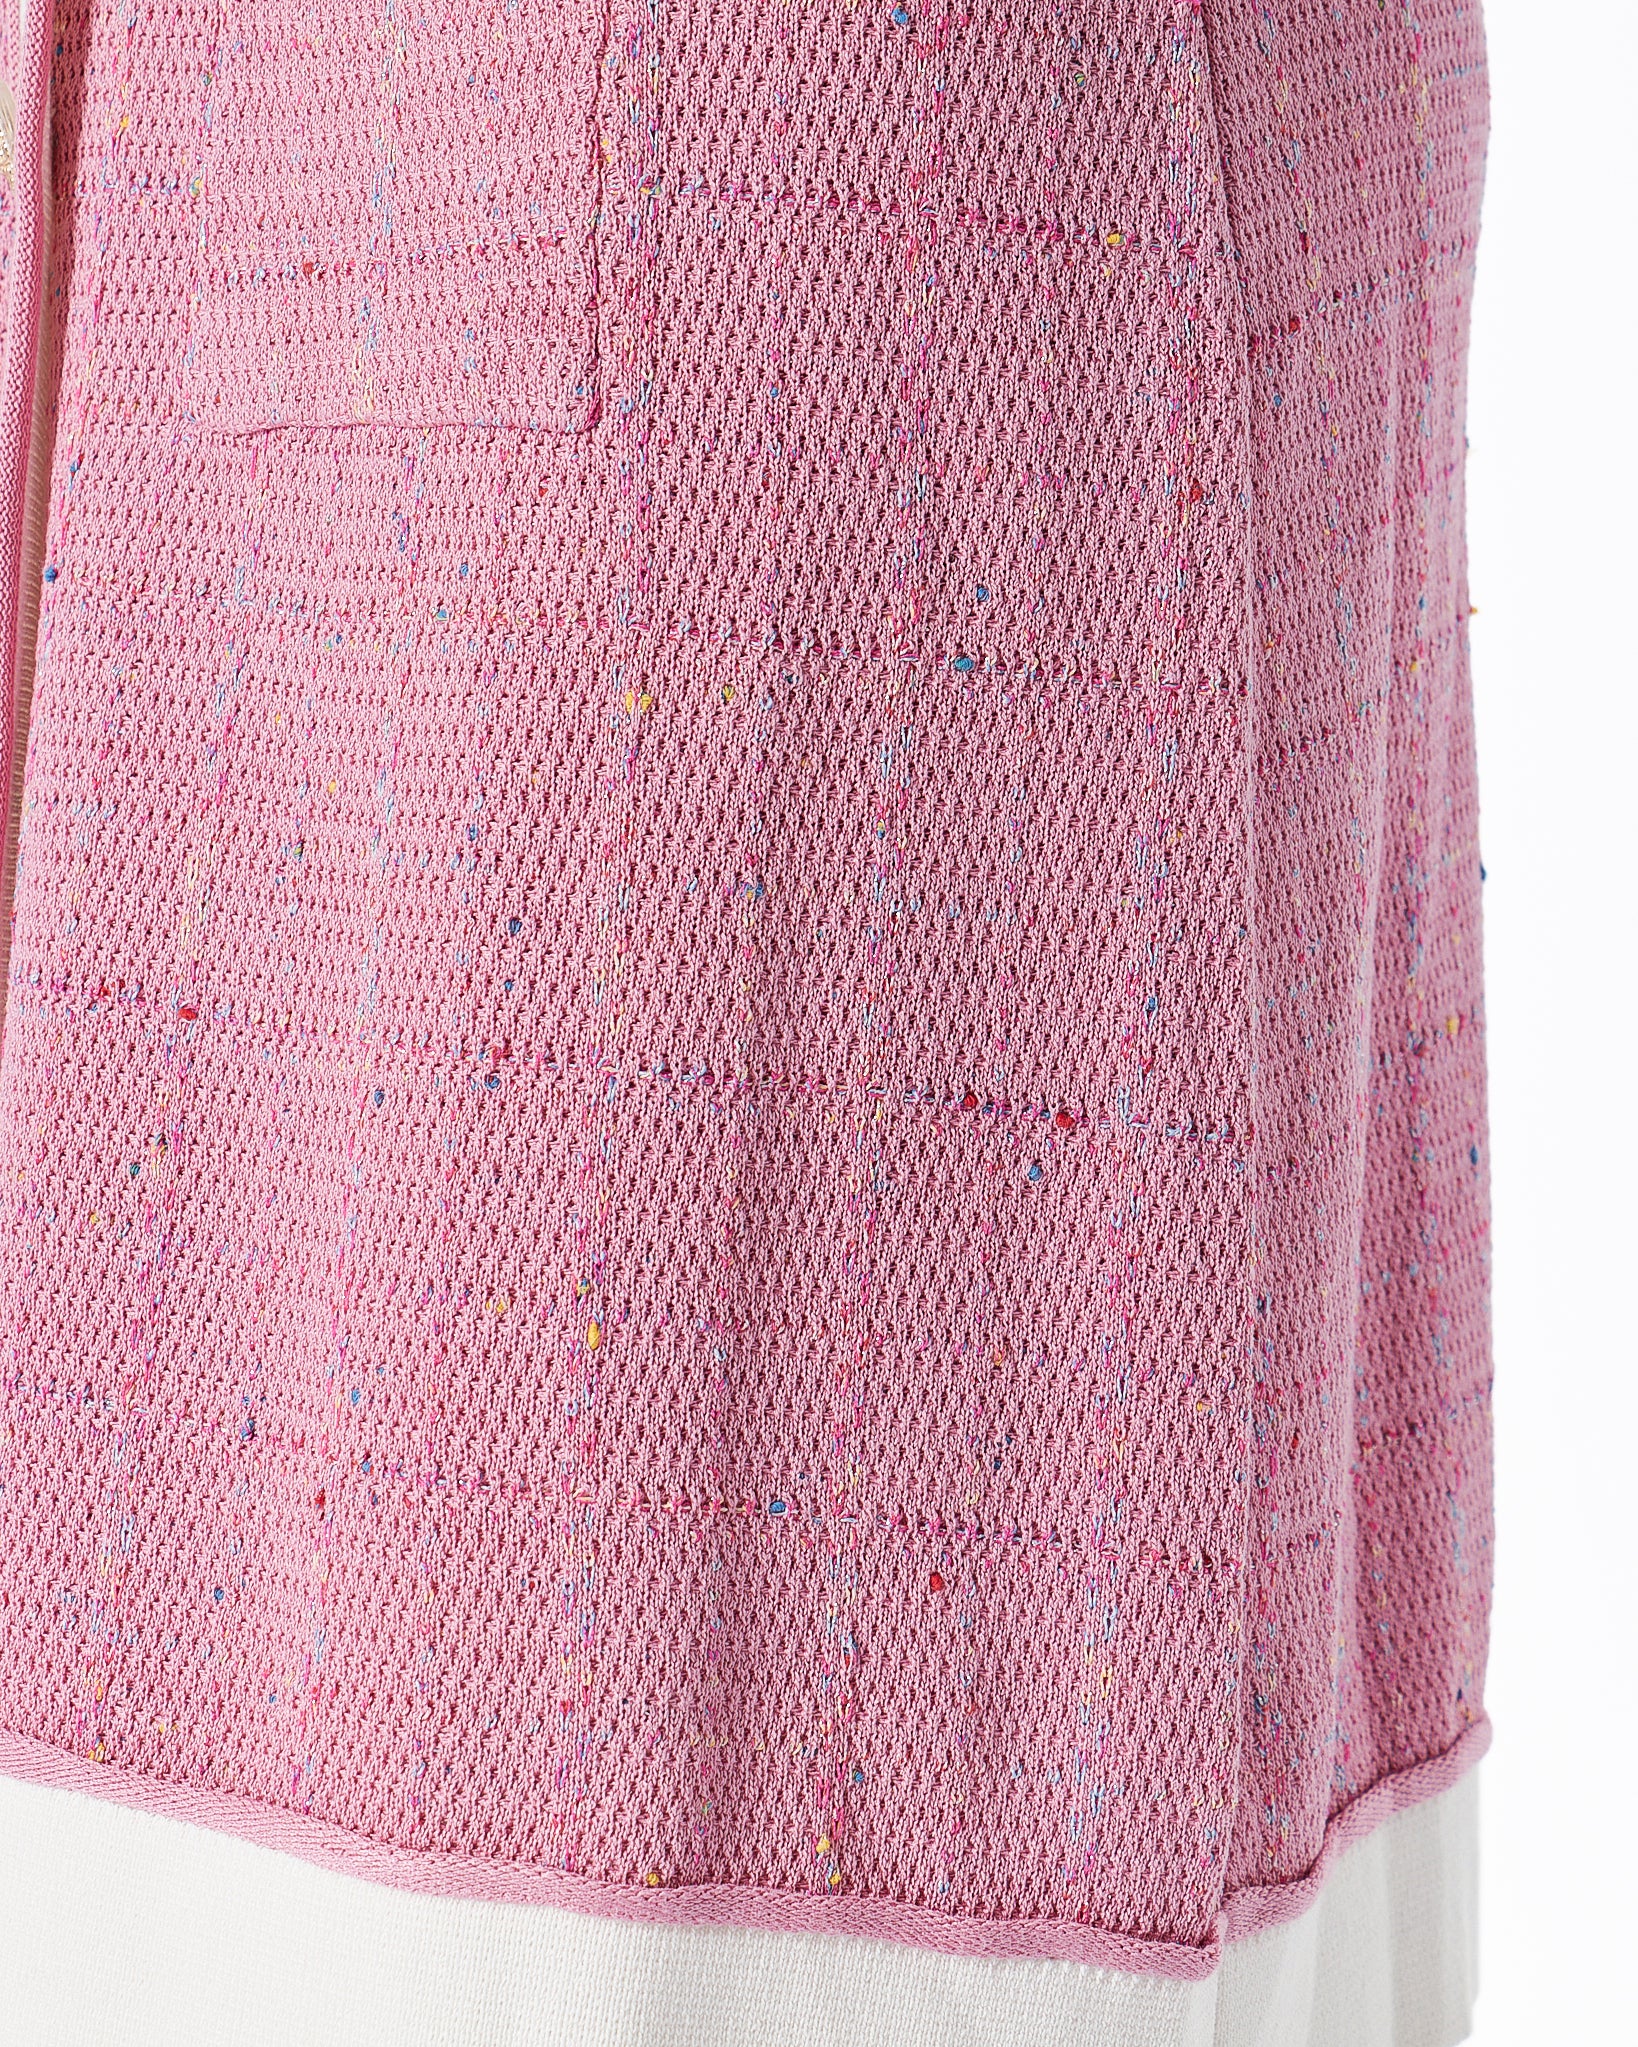 Tweed Lady Pink Dress 89.90